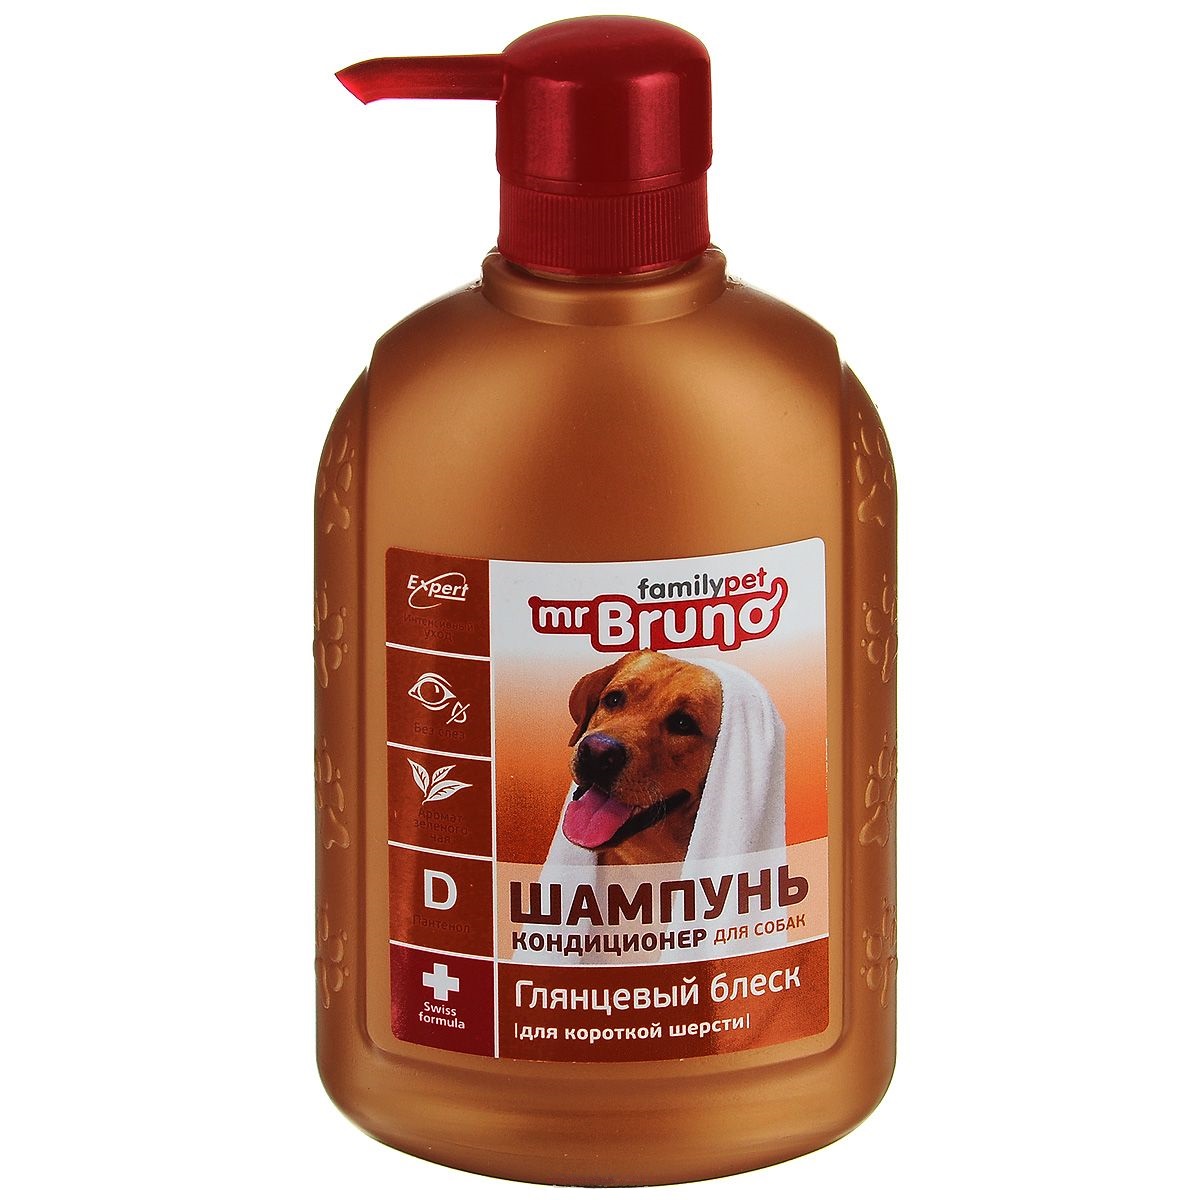 фото Шампунь-бальзам для собак mr.bruno №1 глянцевый блеск, для короткой шерсти, 350 мл